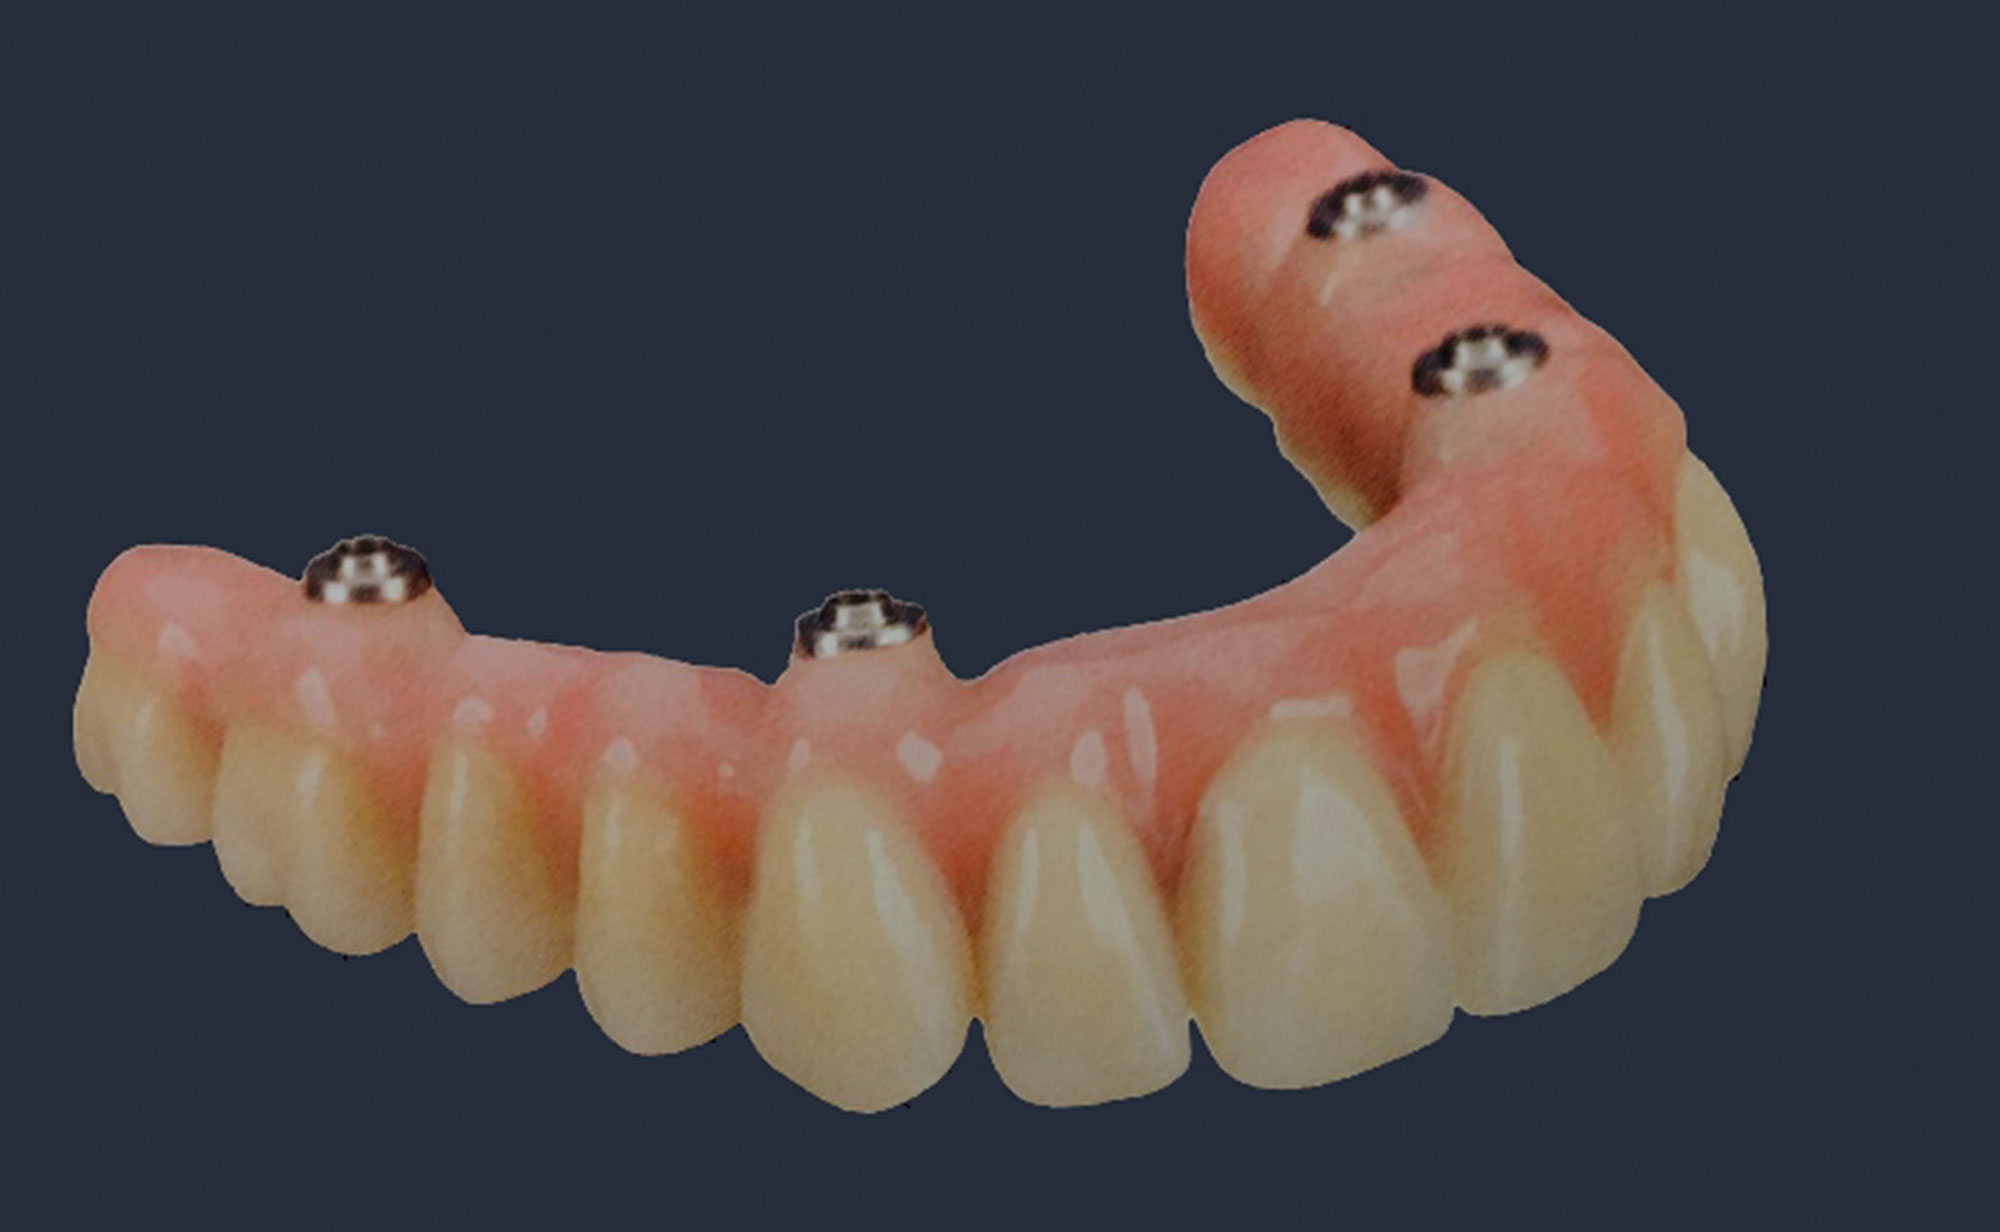 Gaumenplatte zahnersatz ohne Eine Zahnprothese